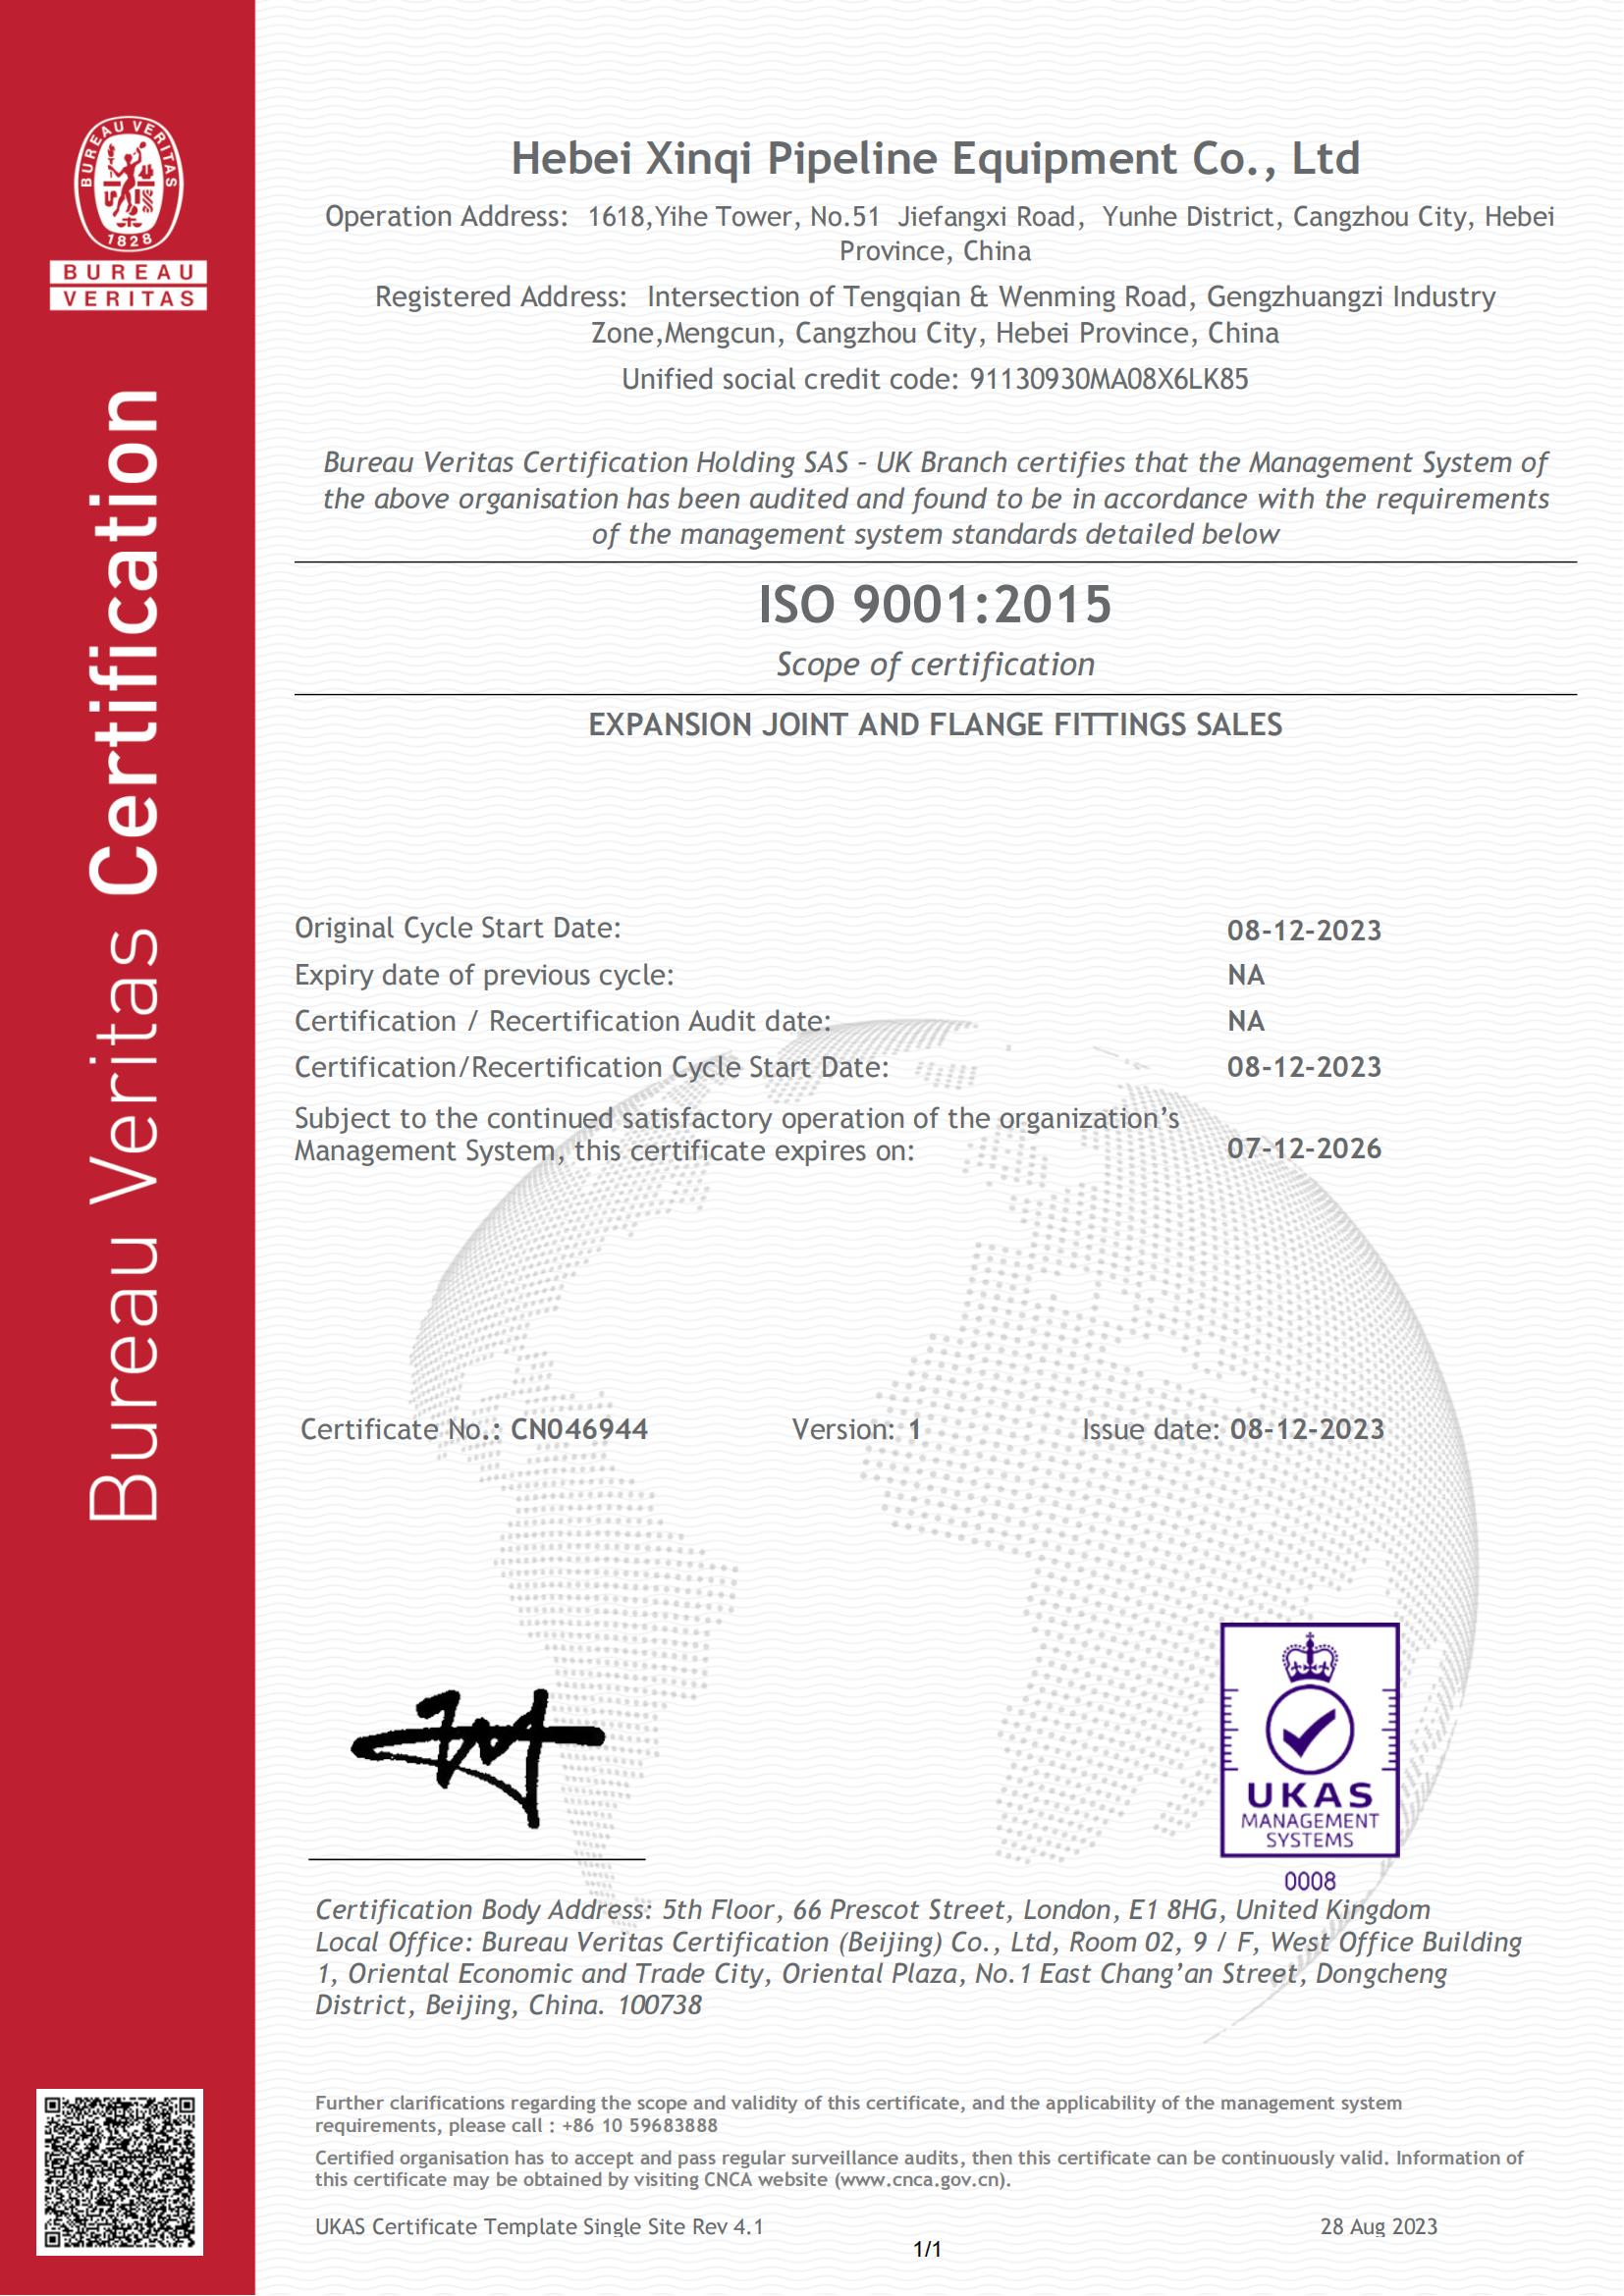 Esam ieguvuši ISO sertifikācijas sertifikātu.